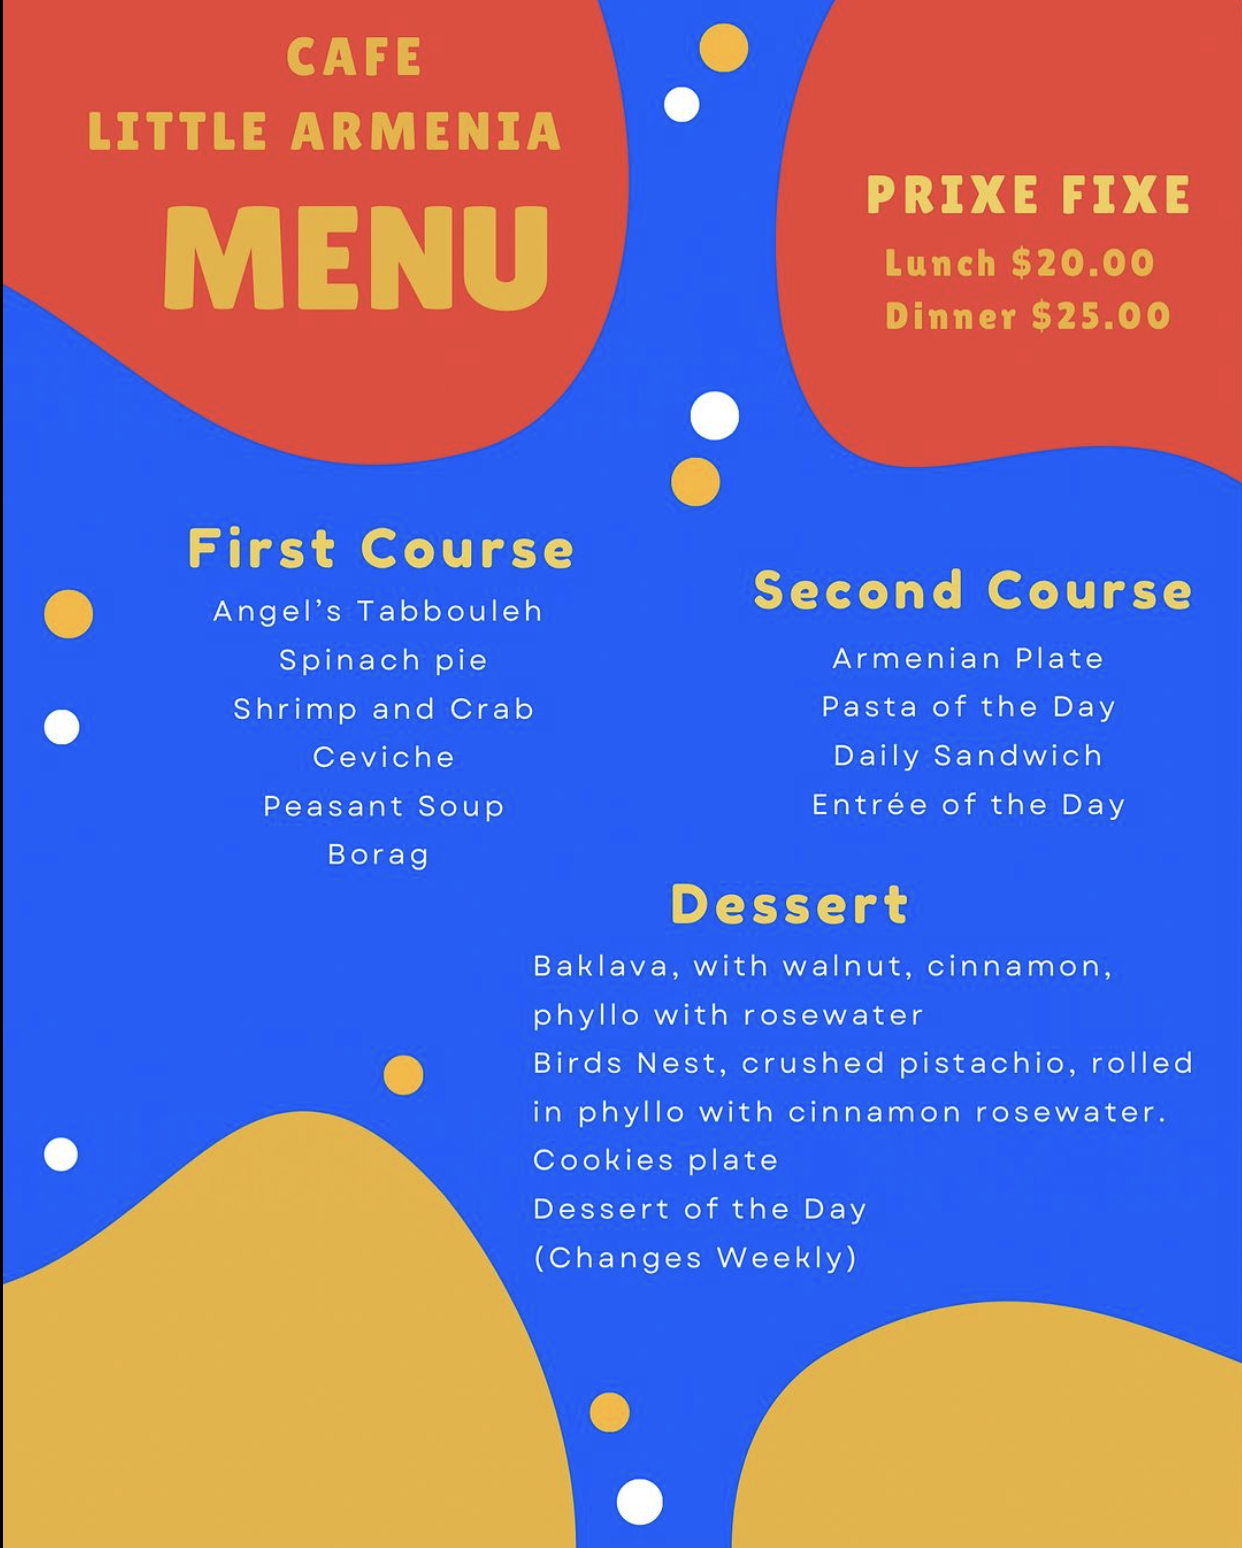 A sample 3 course food menu